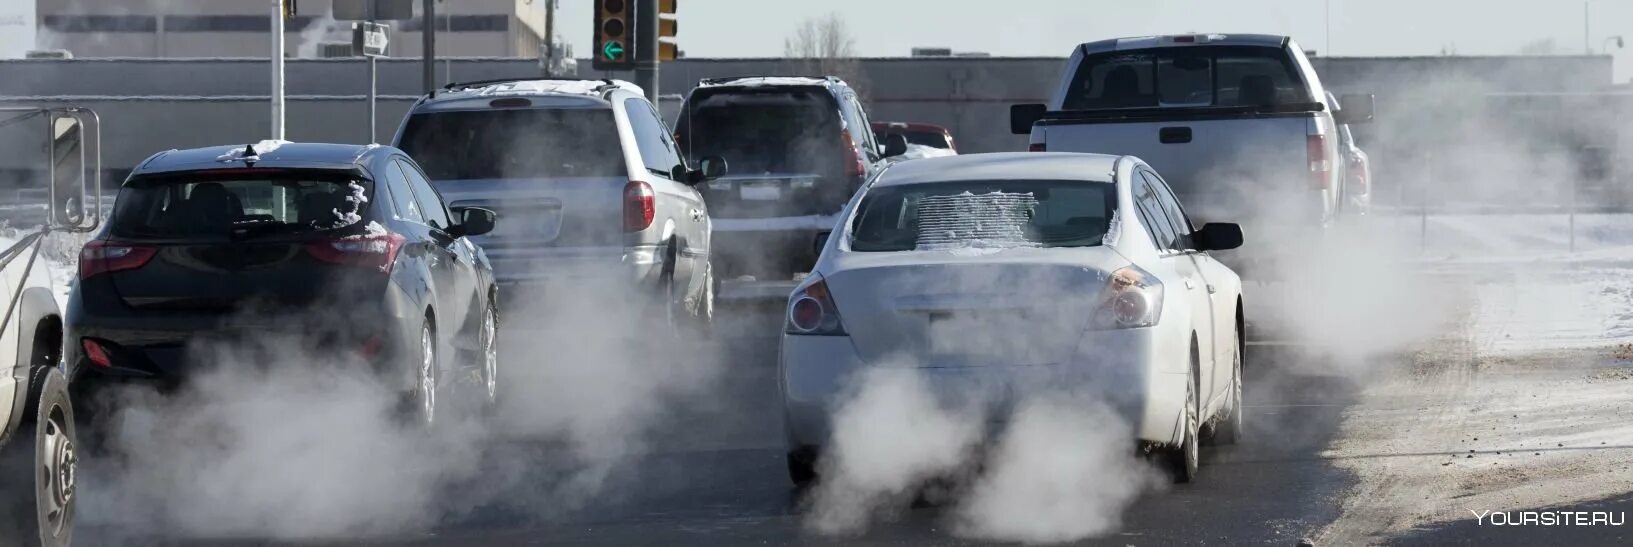 Выхлопные ГАЗЫ автомобилей. Загрязнение воздуха машинами. Загрязнение выхлопами от автомобилей. Выхлоп машины. Выхлопы автомобилей работающих на бензине